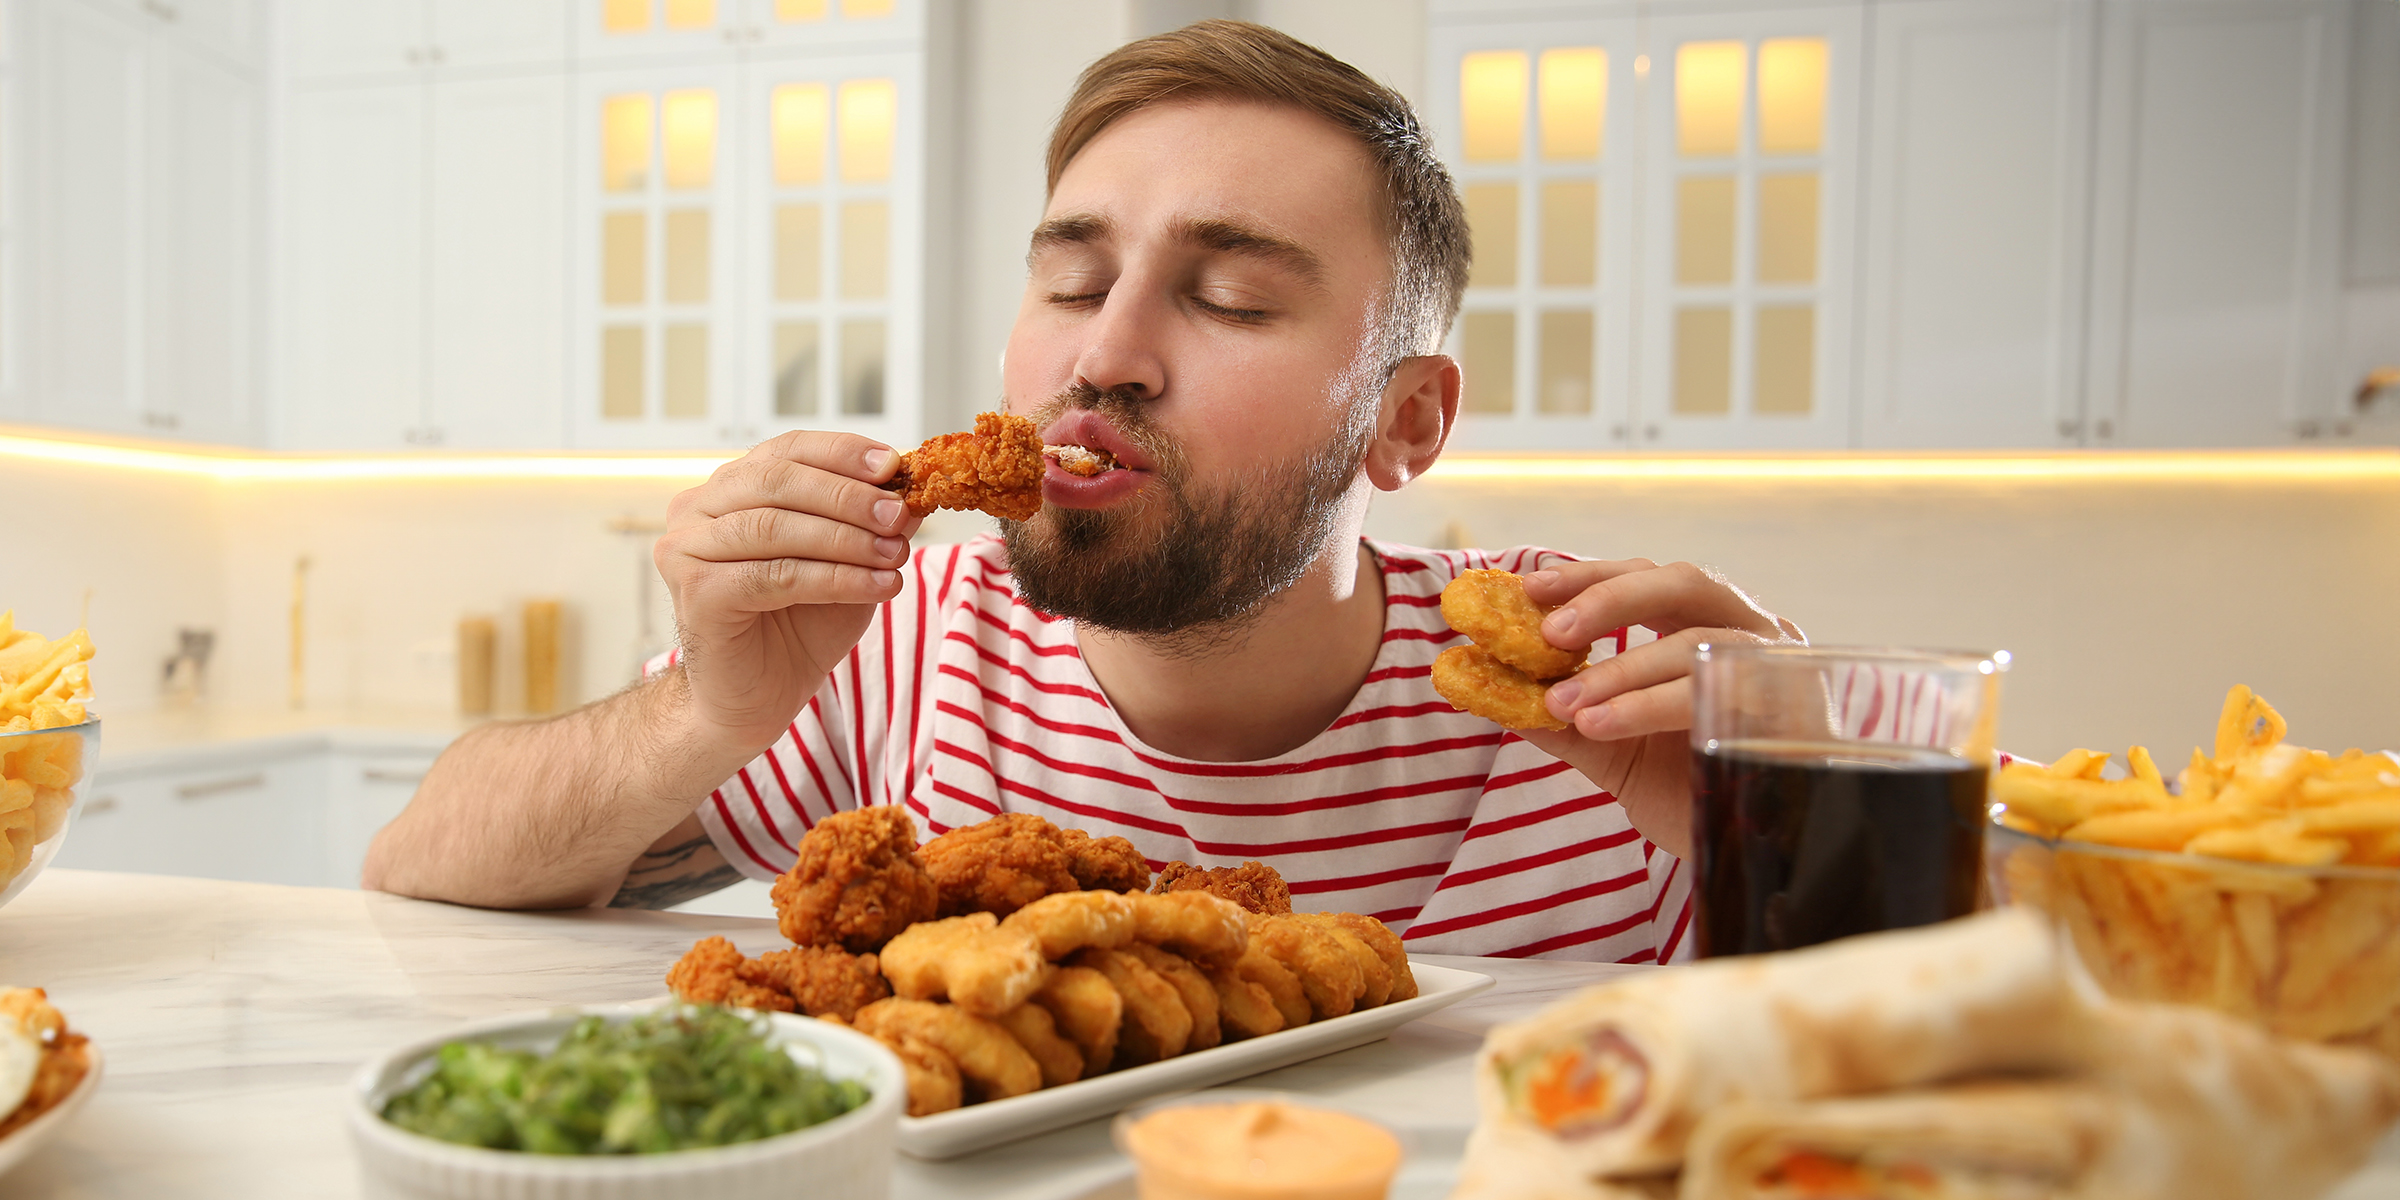 Homme en train de manger | Source : Shutterstock